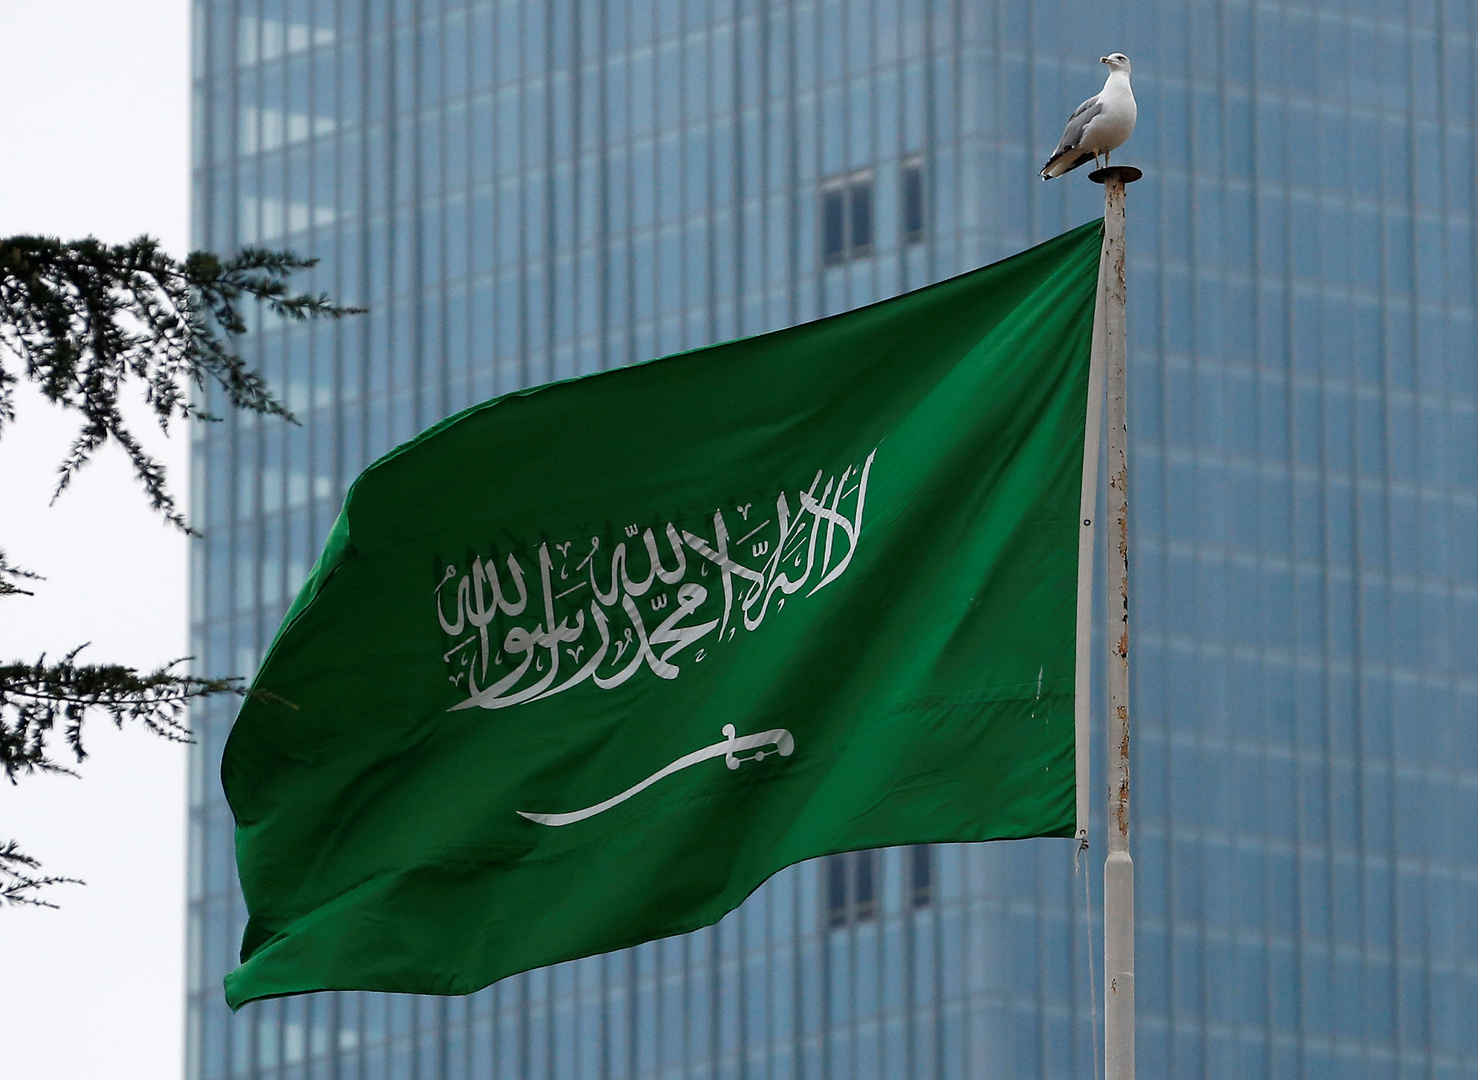 السعودية تسجل أقل معدل للتضخم عربياً